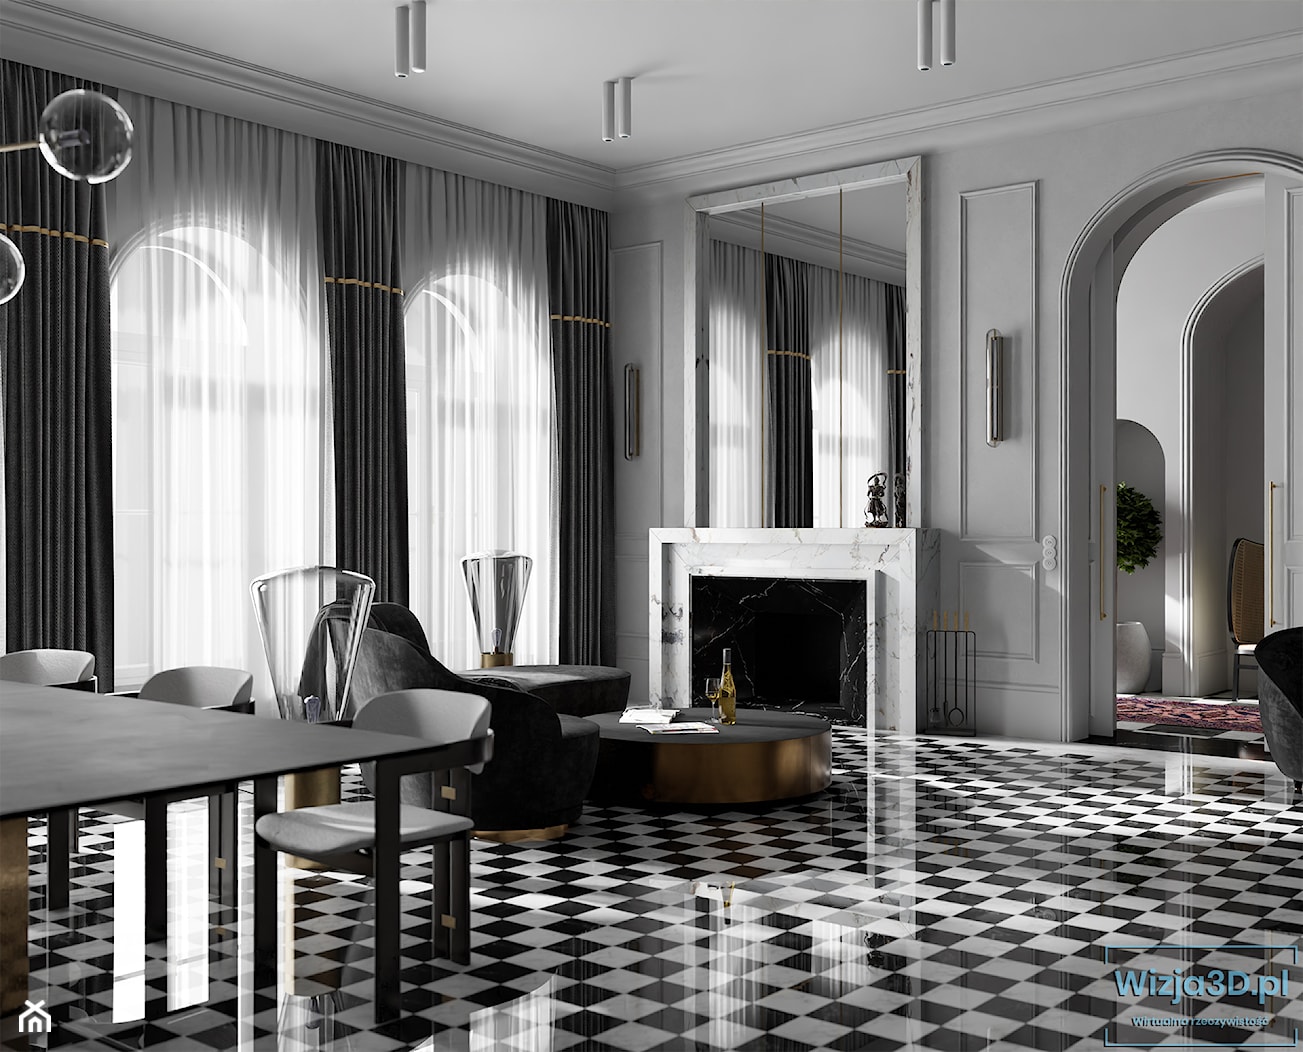 Czarny i biały - Salon, styl tradycyjny - zdjęcie od Wizja3D - Homebook